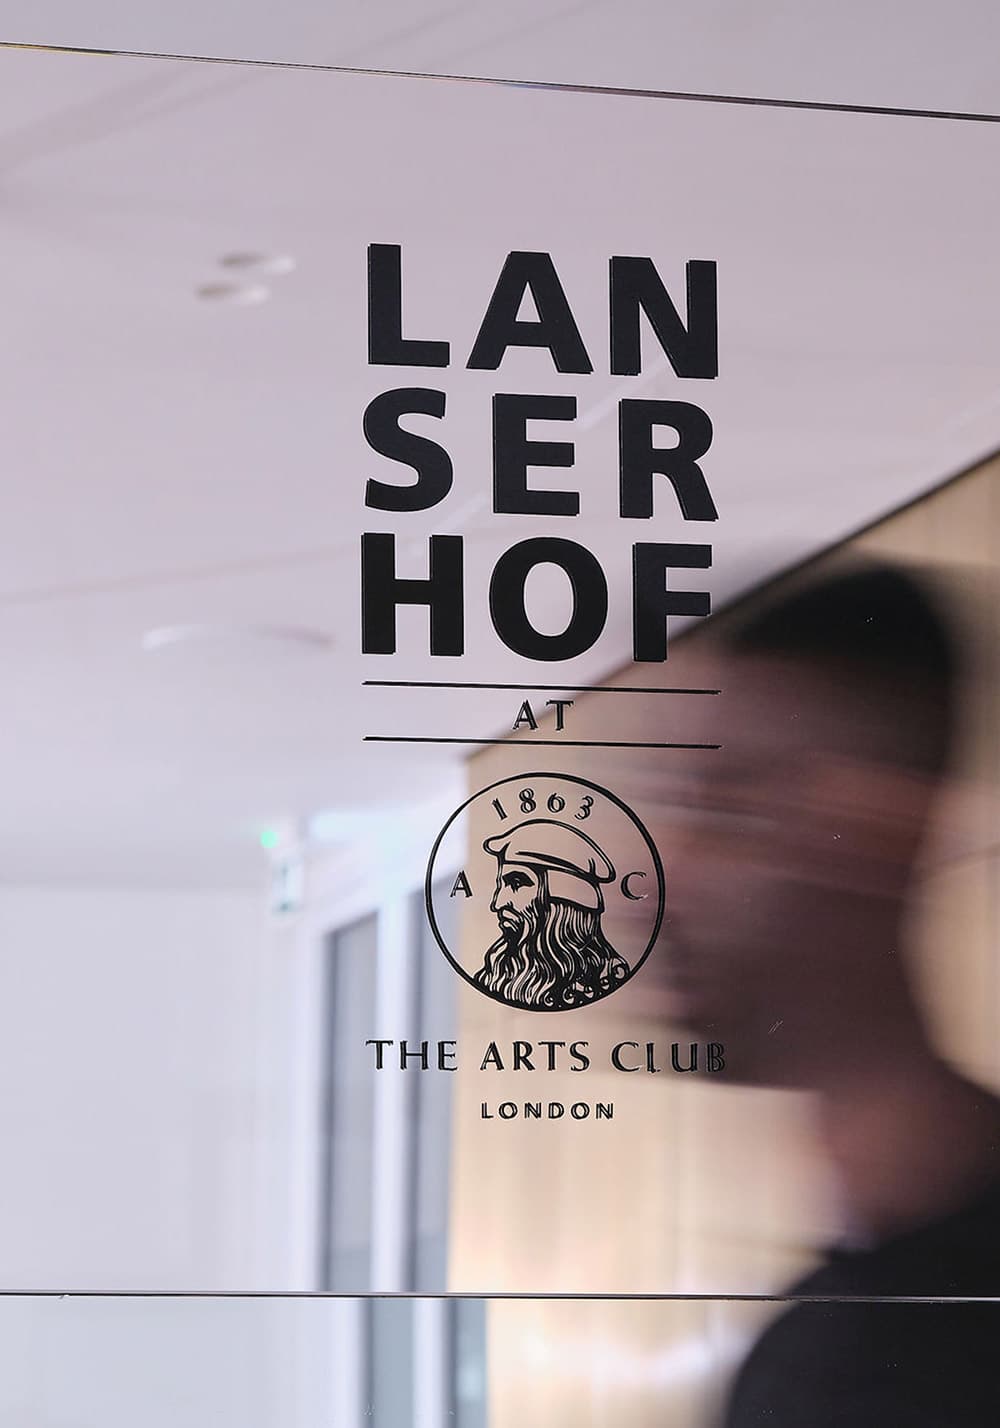 Mann vor Spiegel mit Lanserhof at the Arts Club Logo